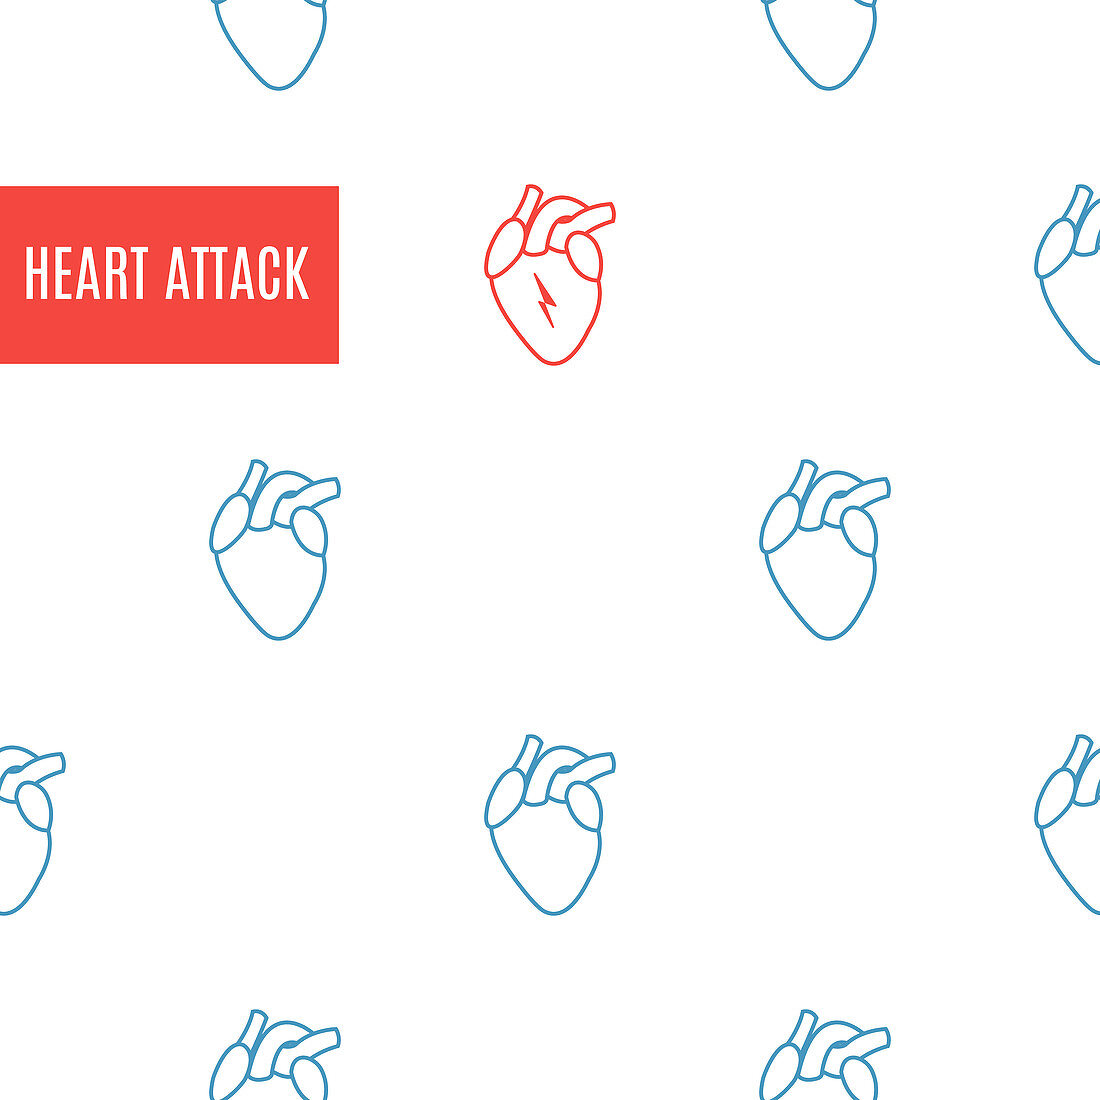 Heart attack, conceptual illustration